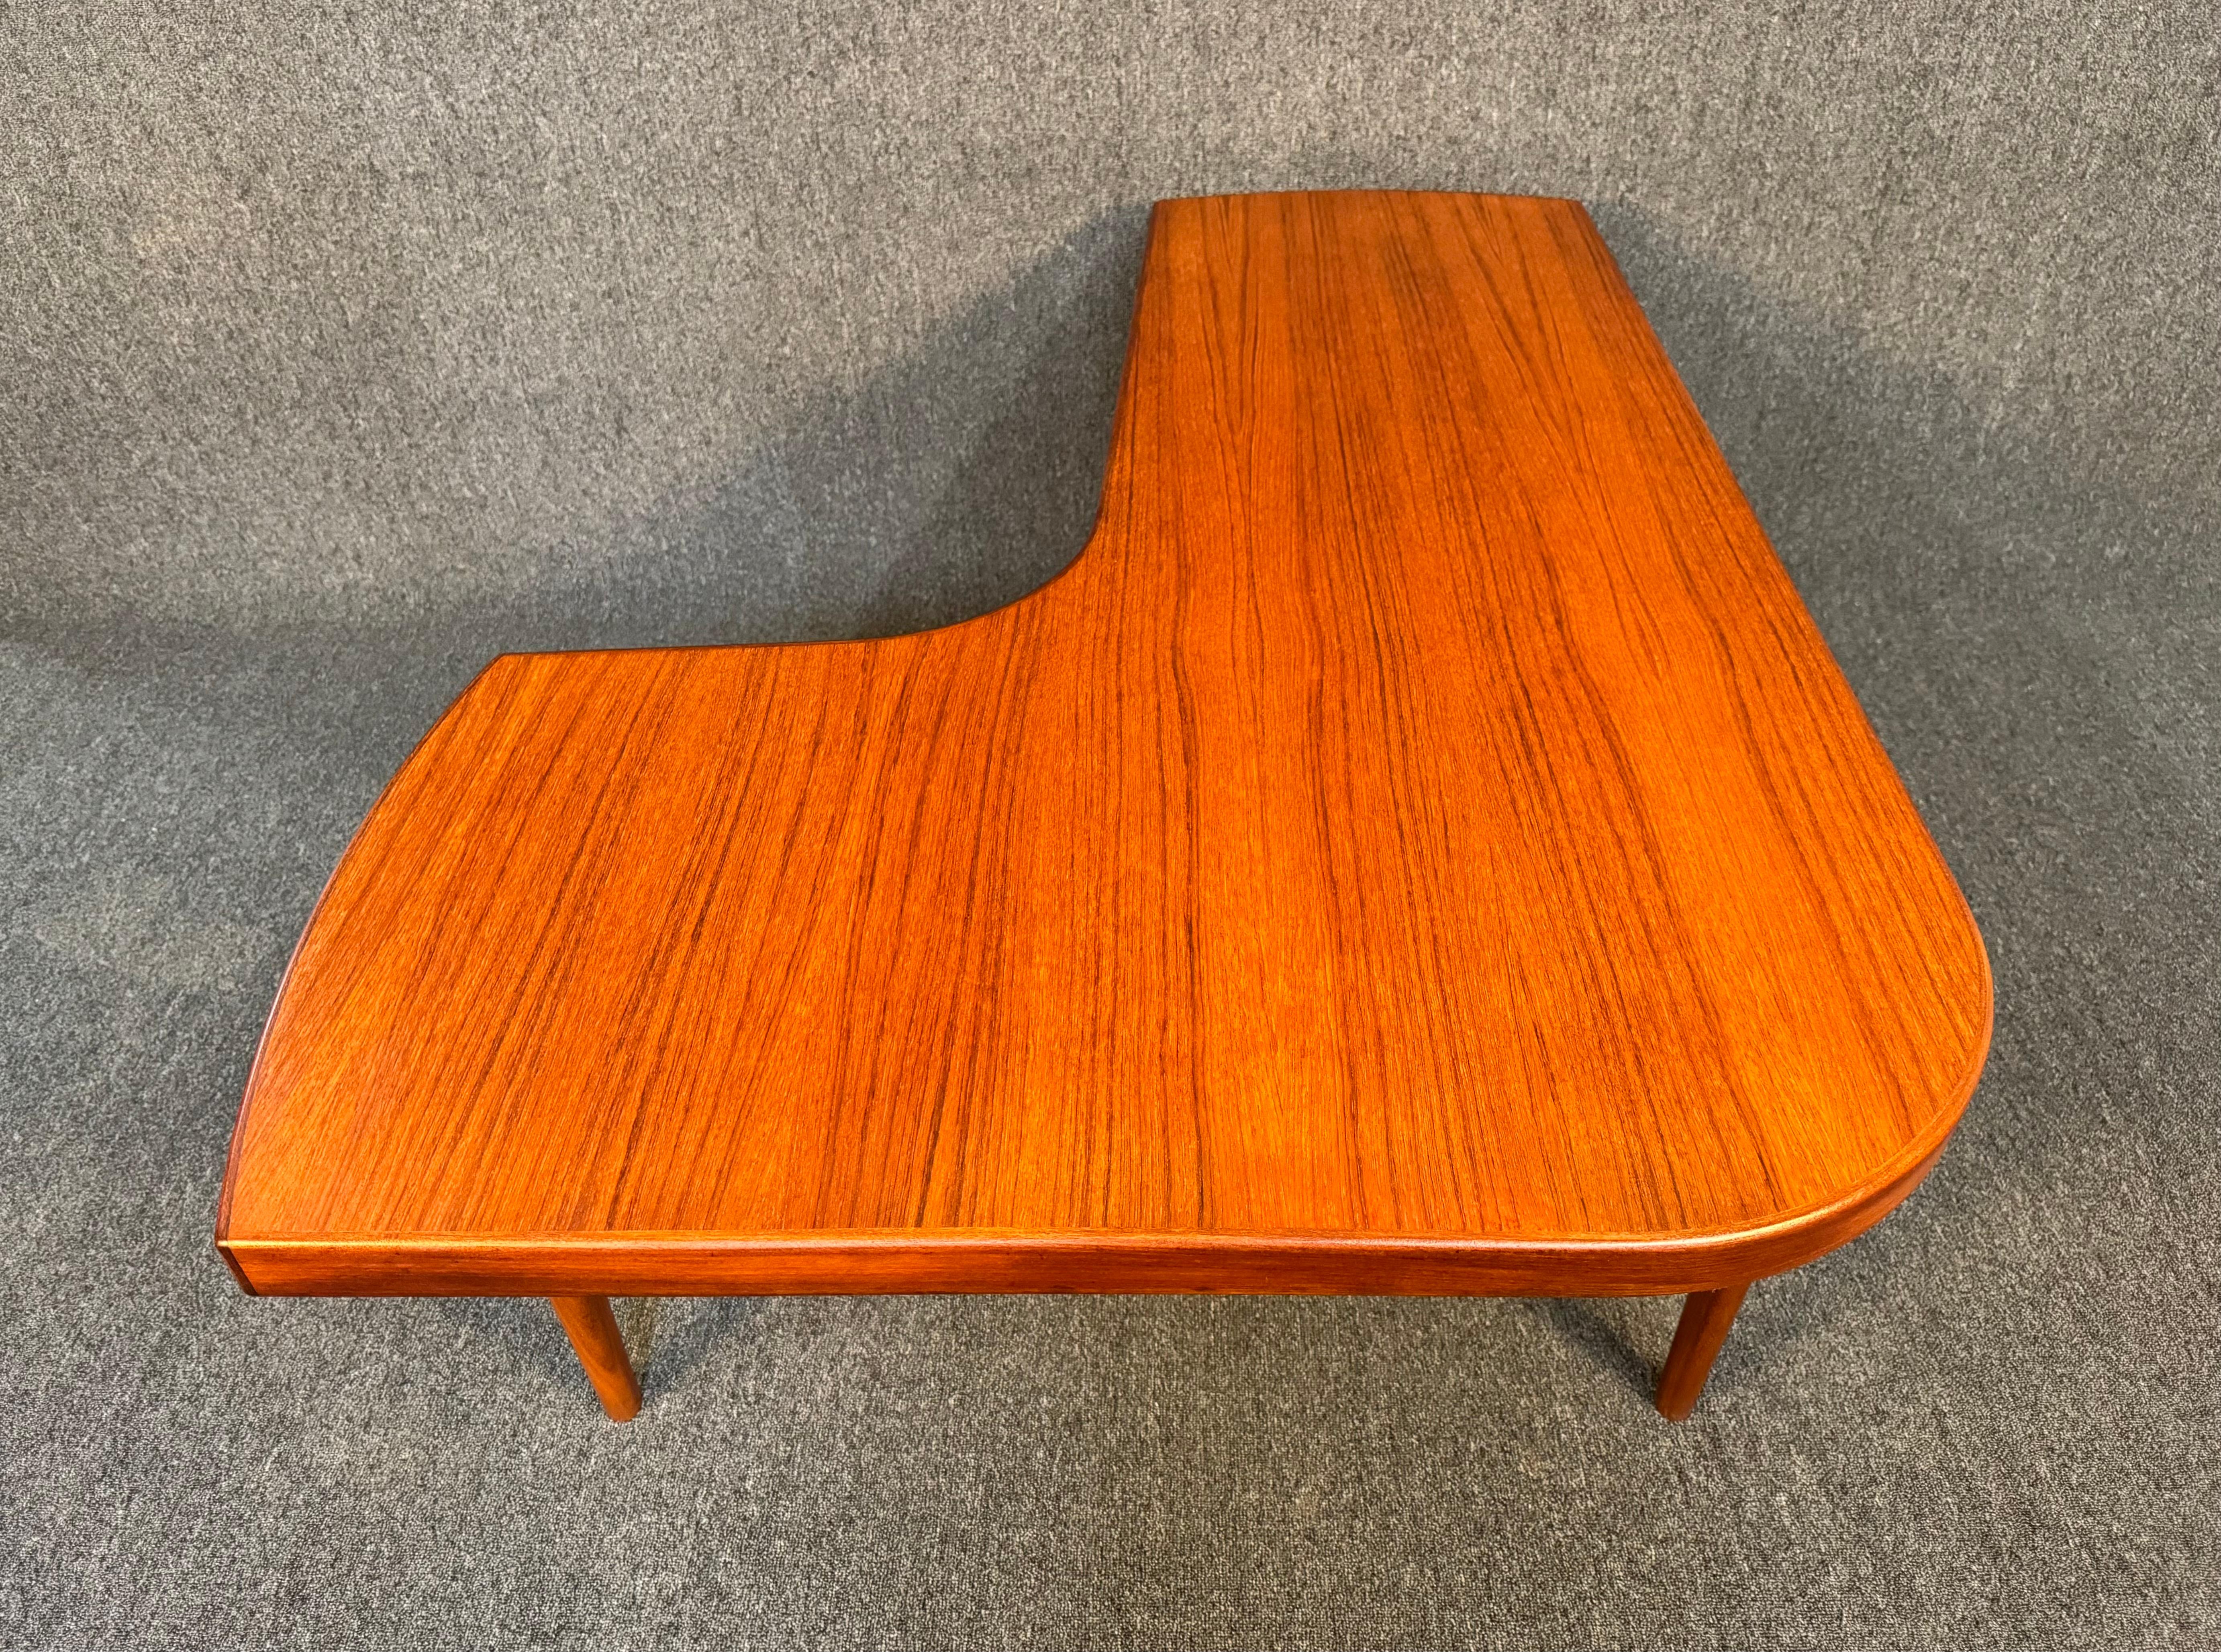 Voici une magnifique table basse moderne scandinave en bois de teck fabriquée au Danemark dans les années 1960.
Cette jolie table, récemment importée d'Europe en Californie avant sa remise à neuf, présente un grain de bois vibrant, un plateau en